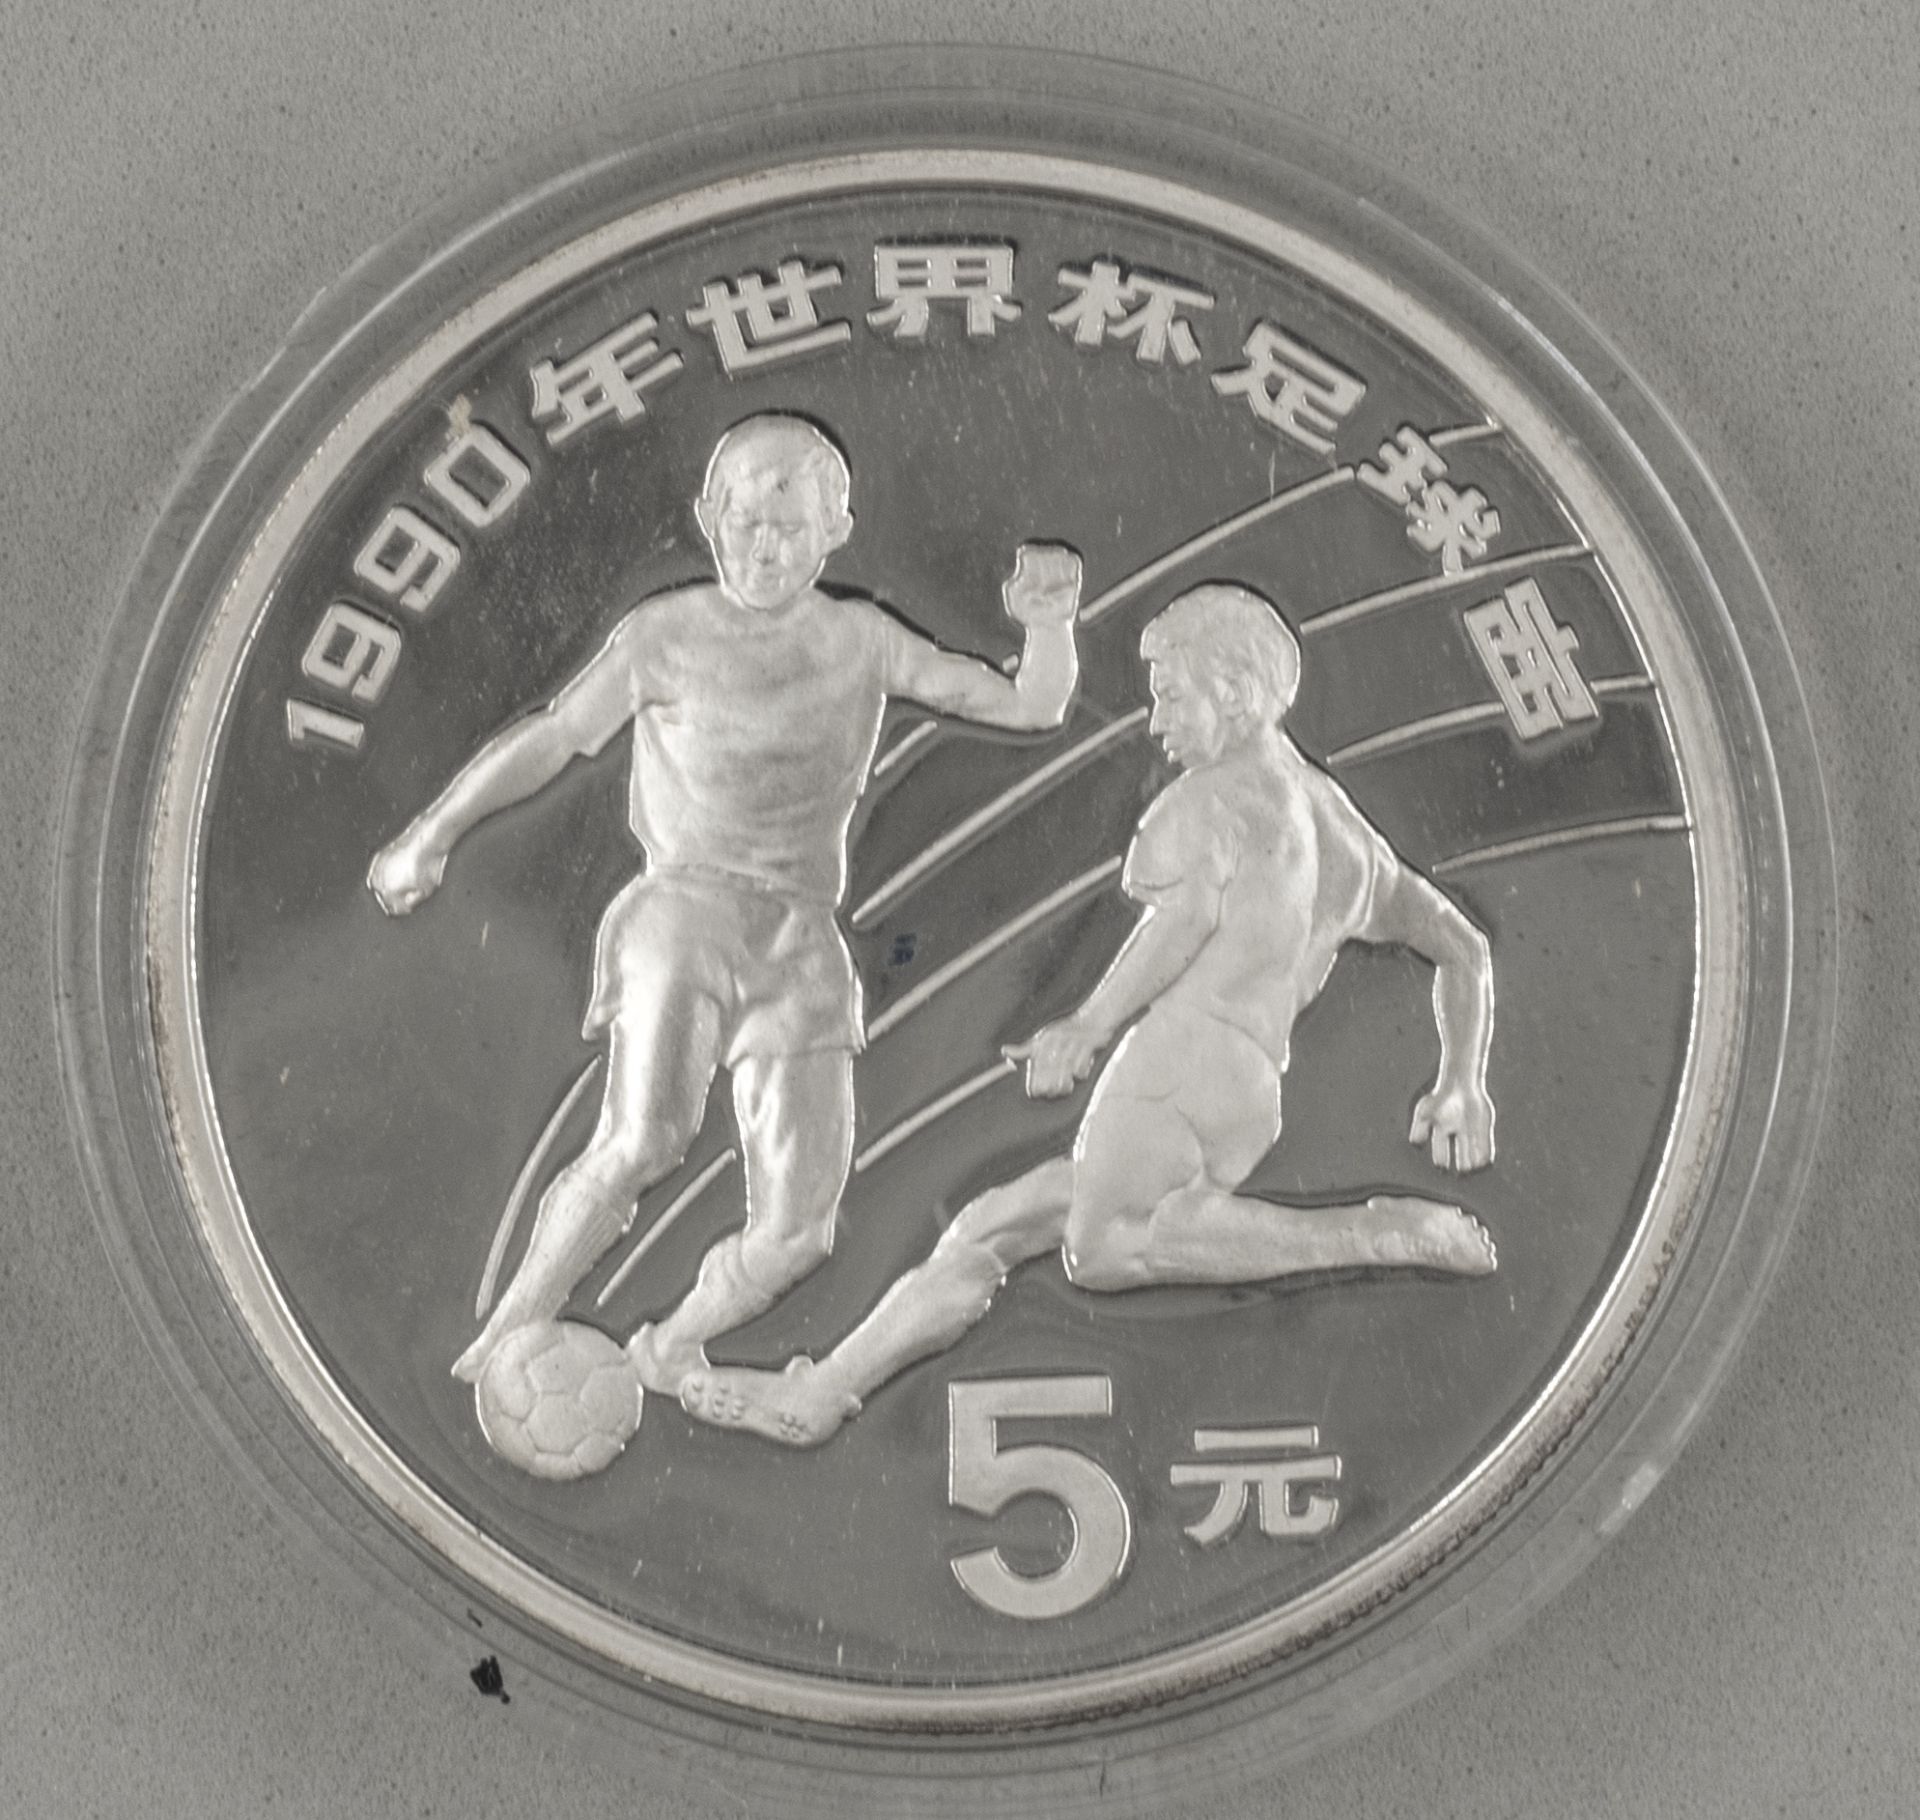 5 Yuan Silbermünze Fußballer, gekapselt.